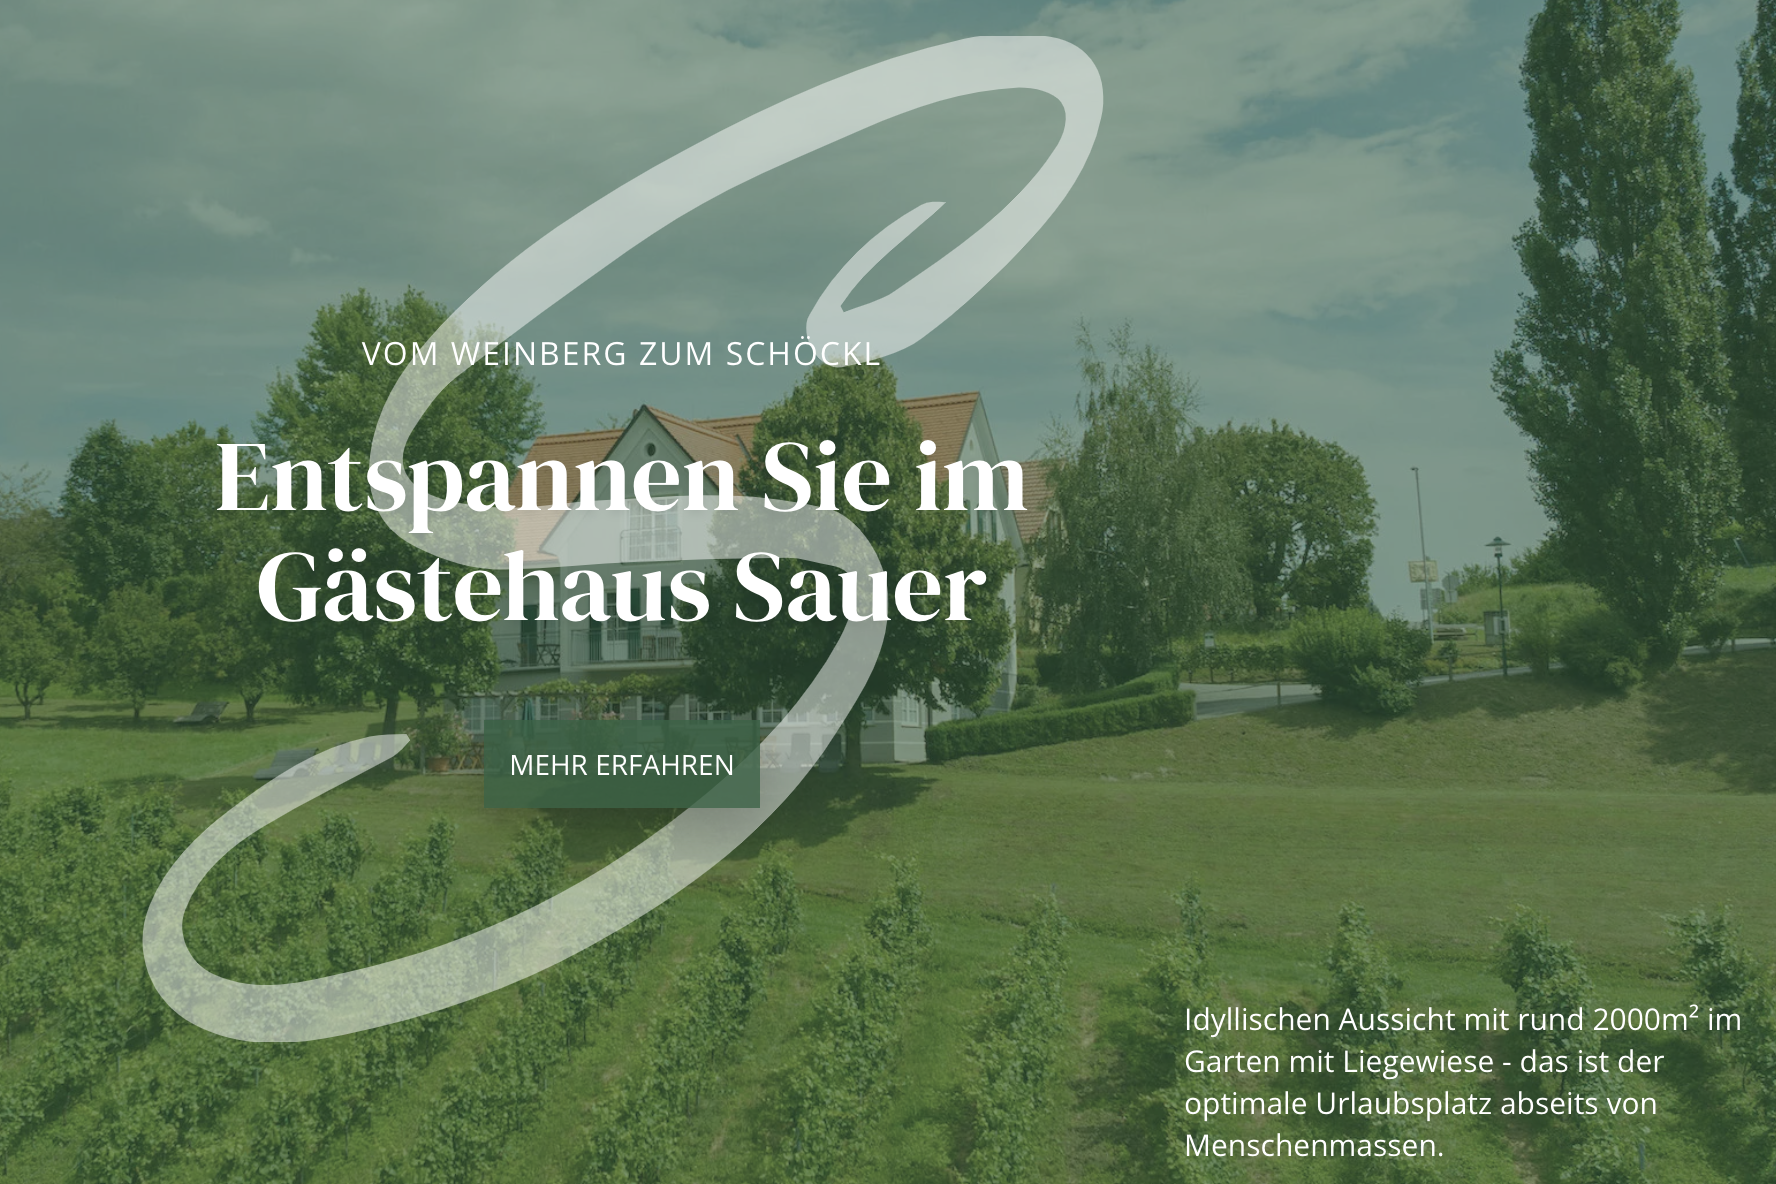 Neue Website – Willkommen im Gäste- und Vitalhaus Sauer in Kitzeck!